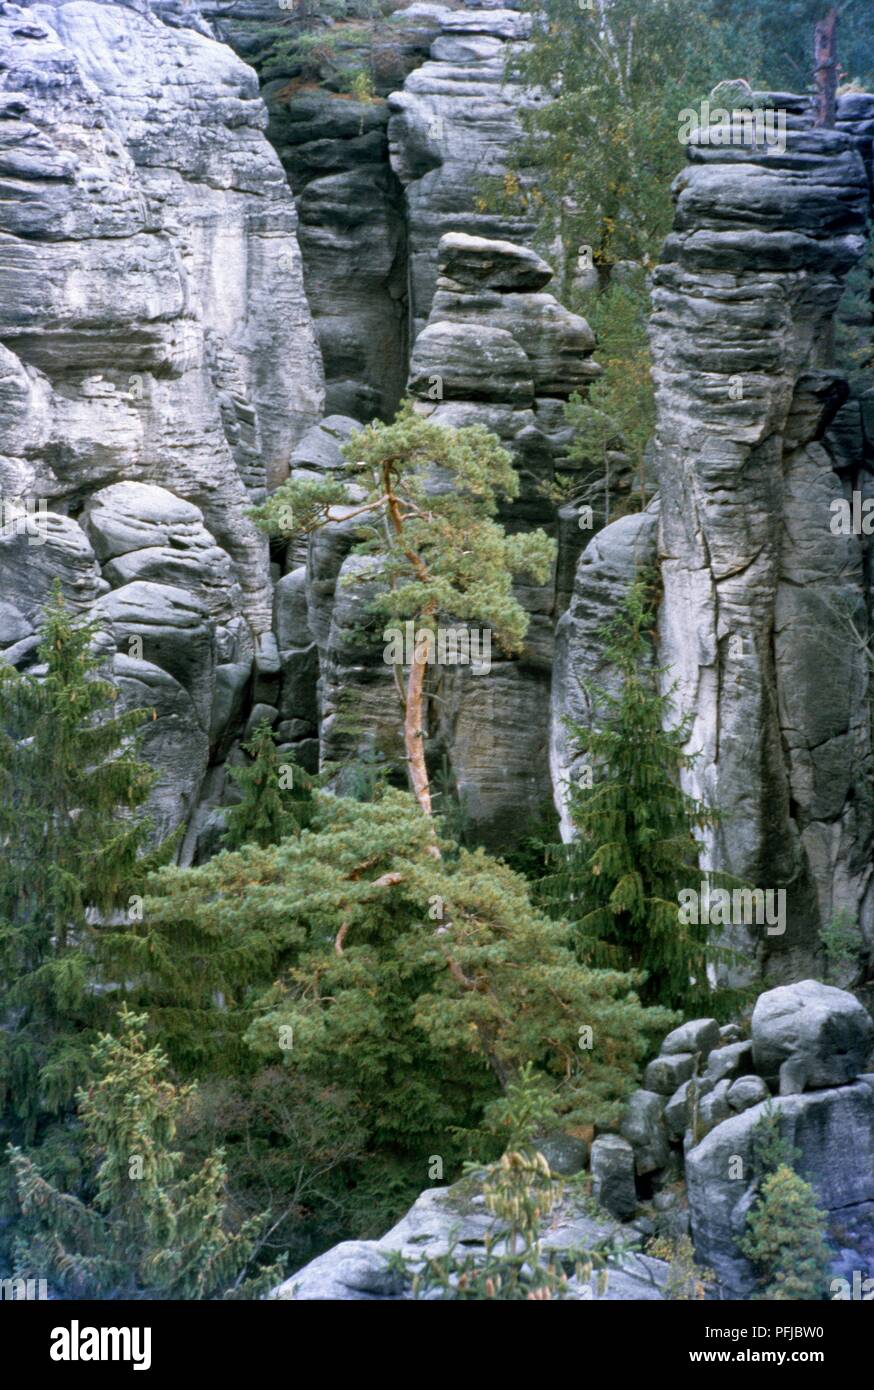 Tschechische Republik, Südböhmen, Cesky Raj, Prachover skaly (Böhmisches Paradies), Bäume und Felsen Stockfoto